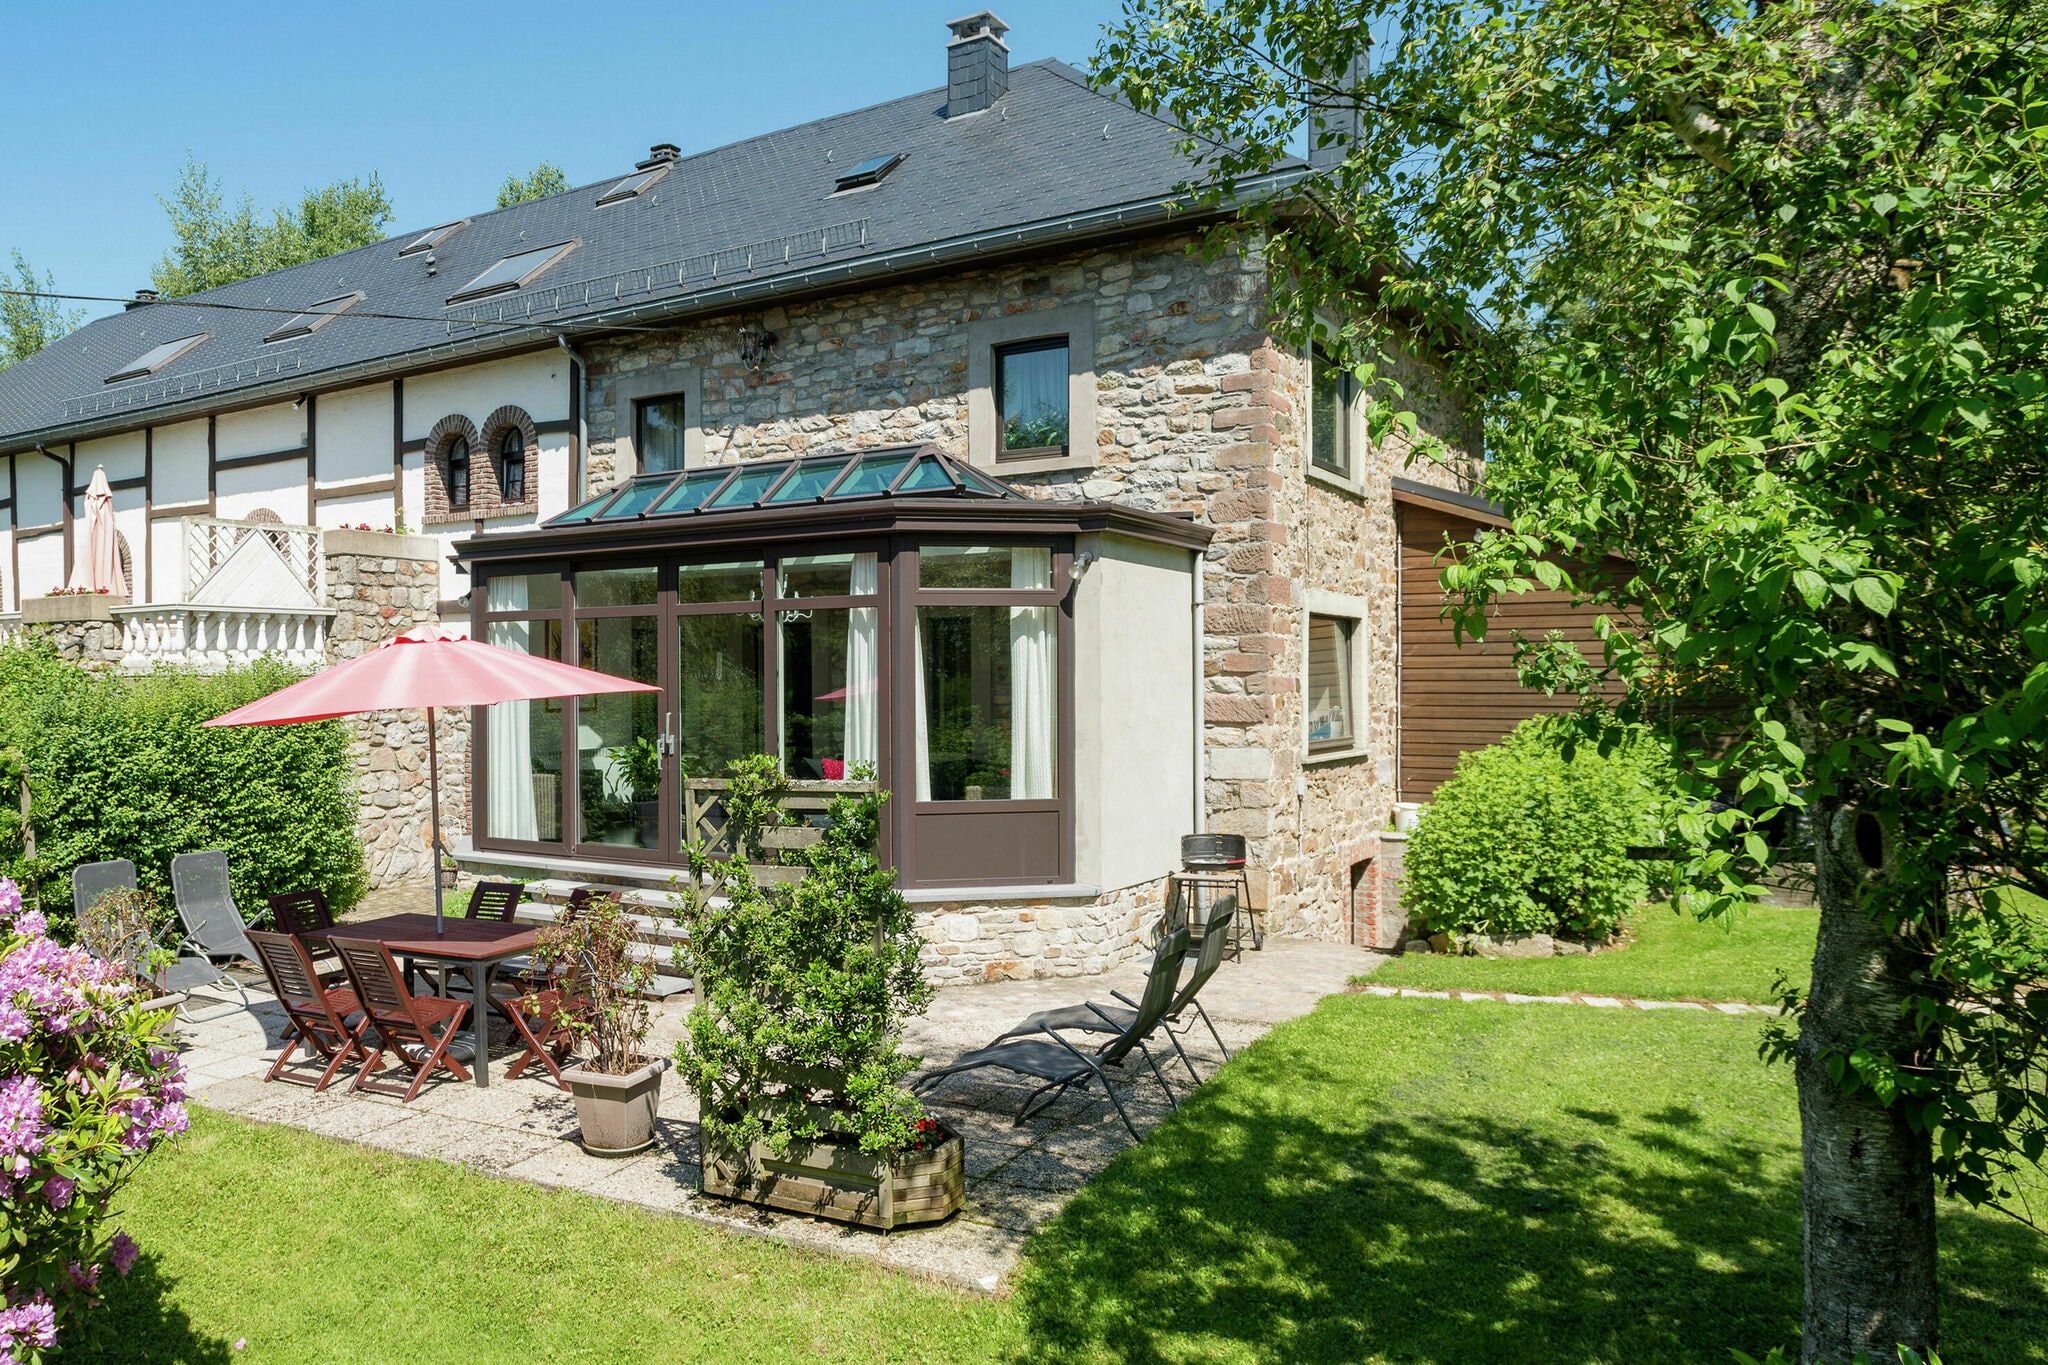 Landelijke cottage in de Ardennen met veranda